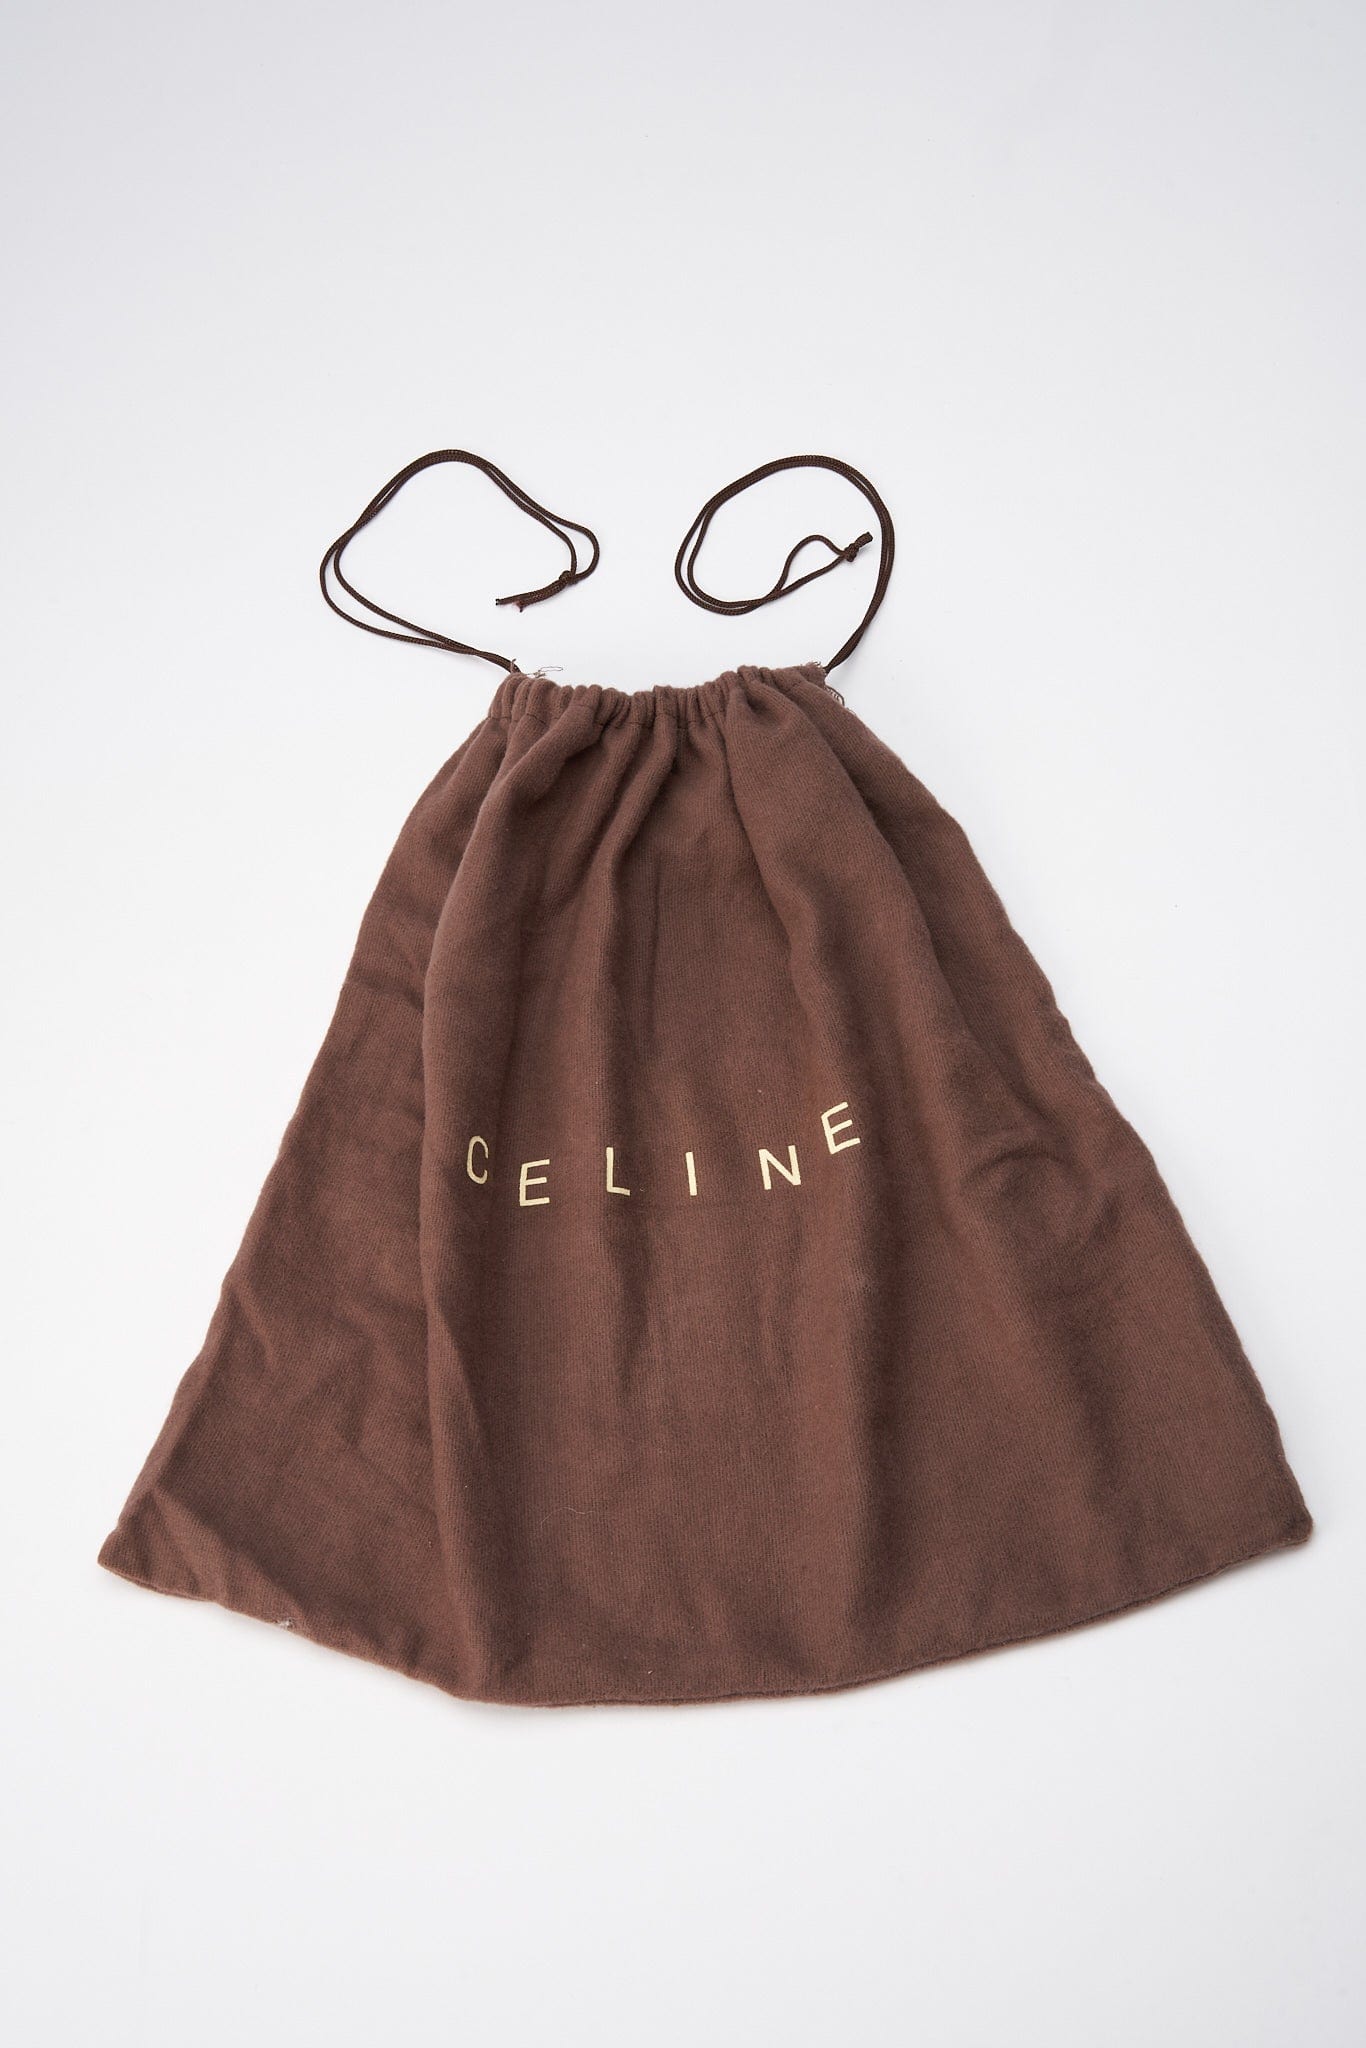 Vintage Celine Bag Denim Belt/Sling Bag